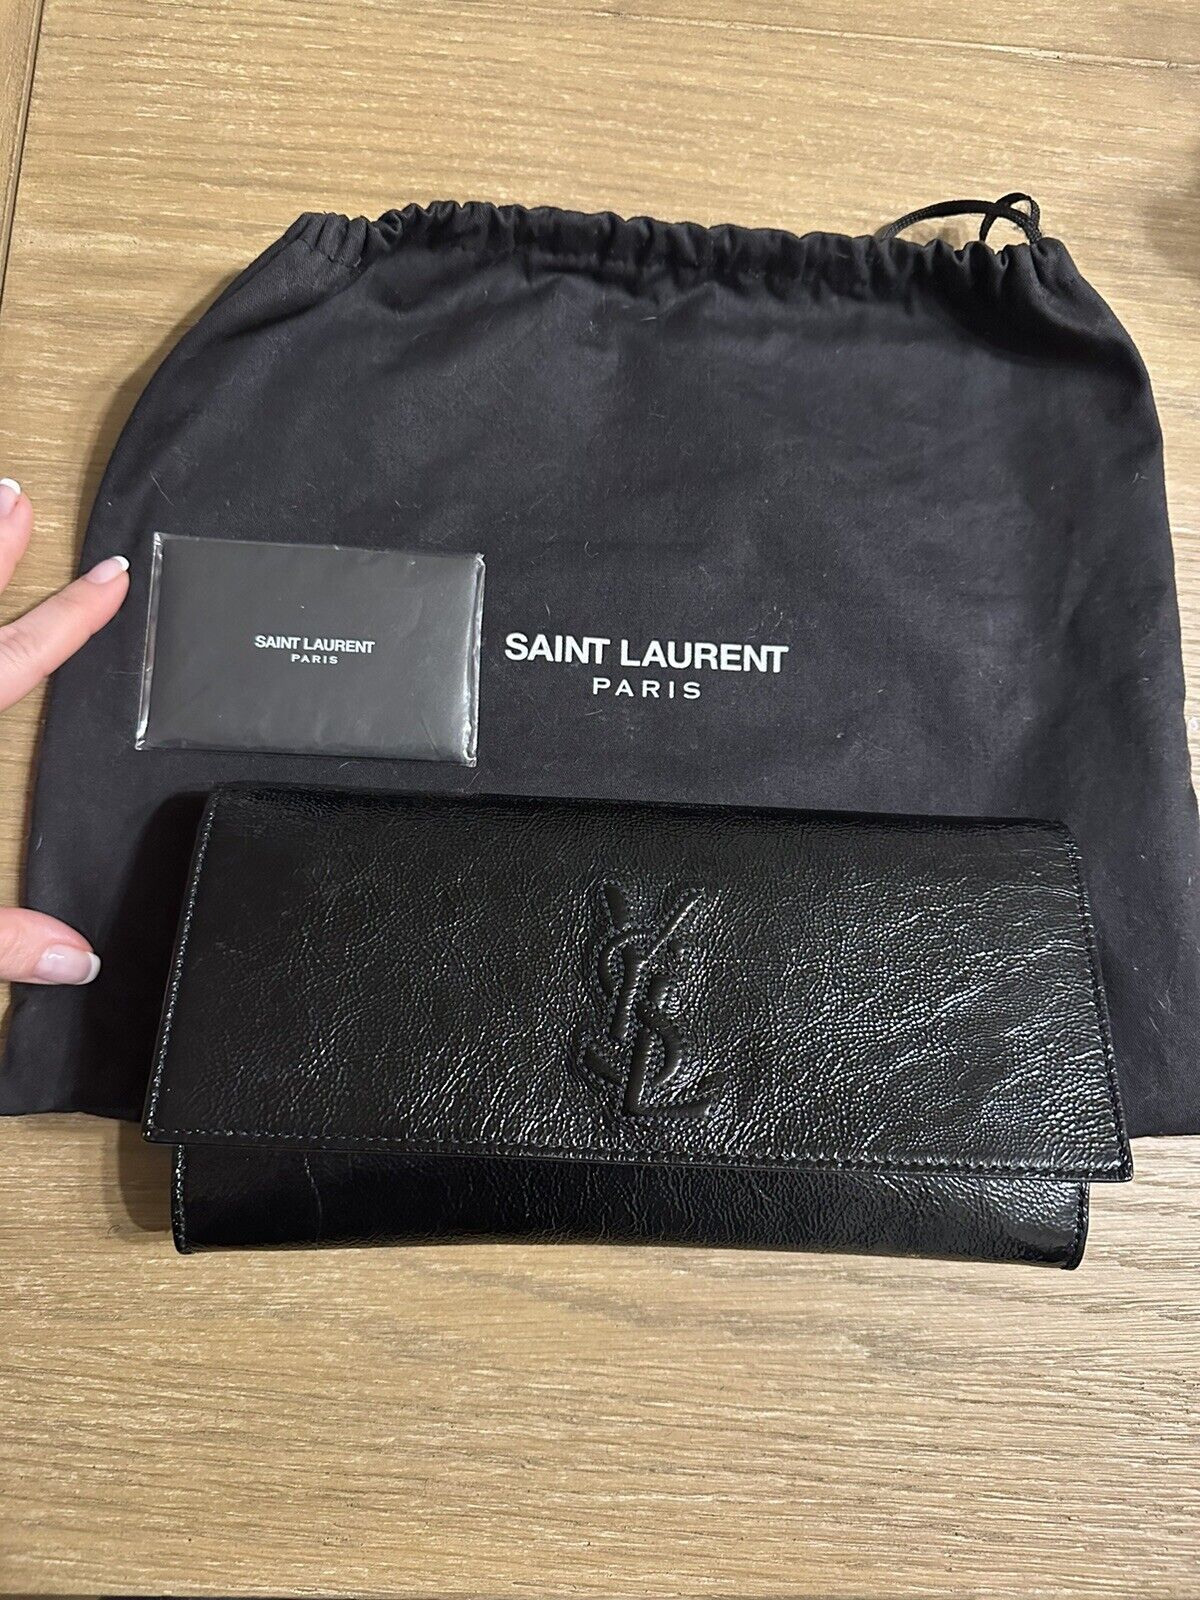 Yves Saint Laurent belle de jour black clutch - image 1